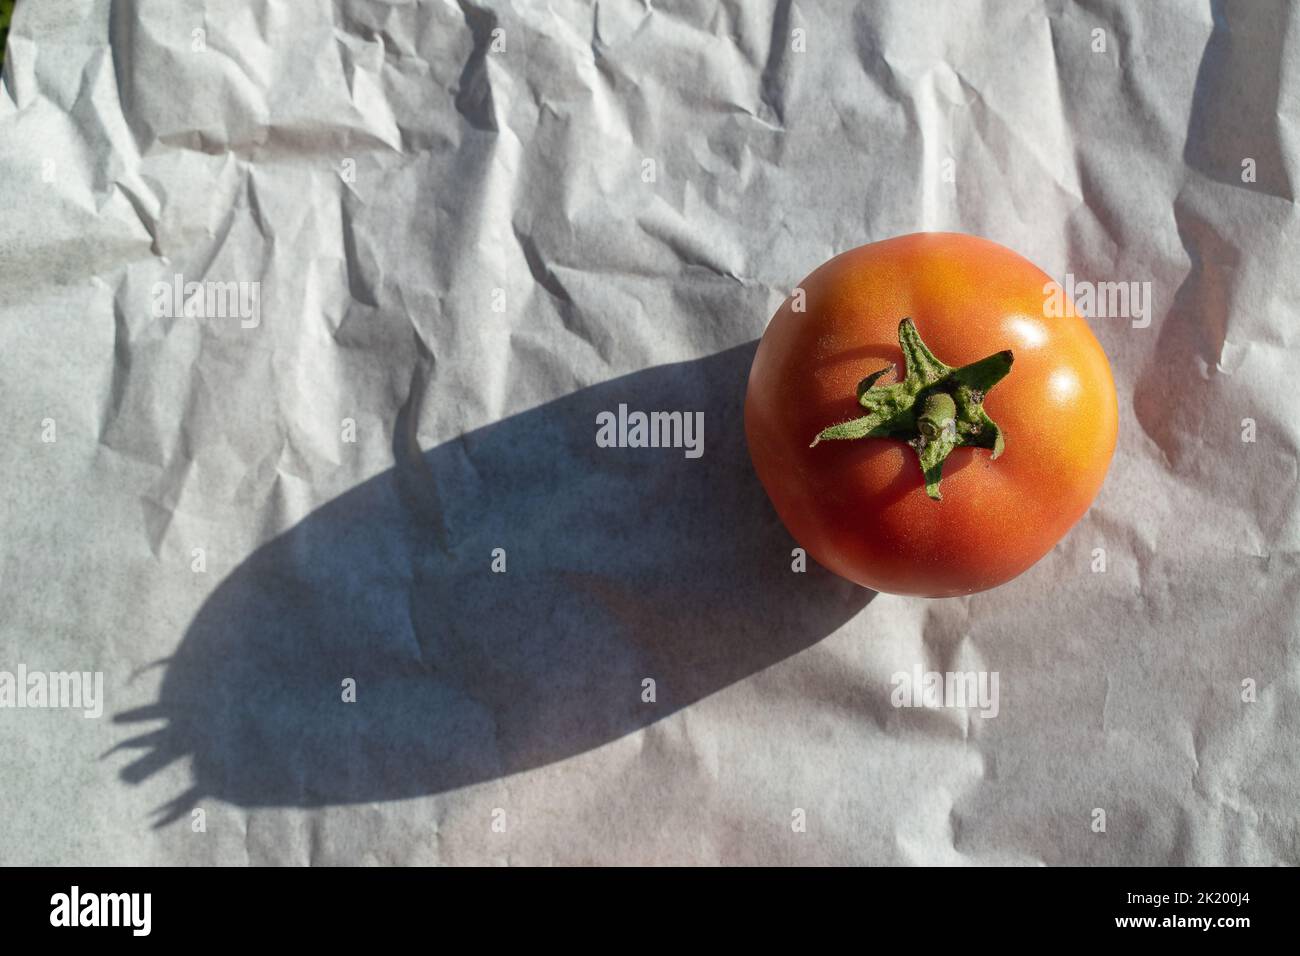 Vista superior de un tomate maduro y jugoso sobre fondo blanco. Foto de stock